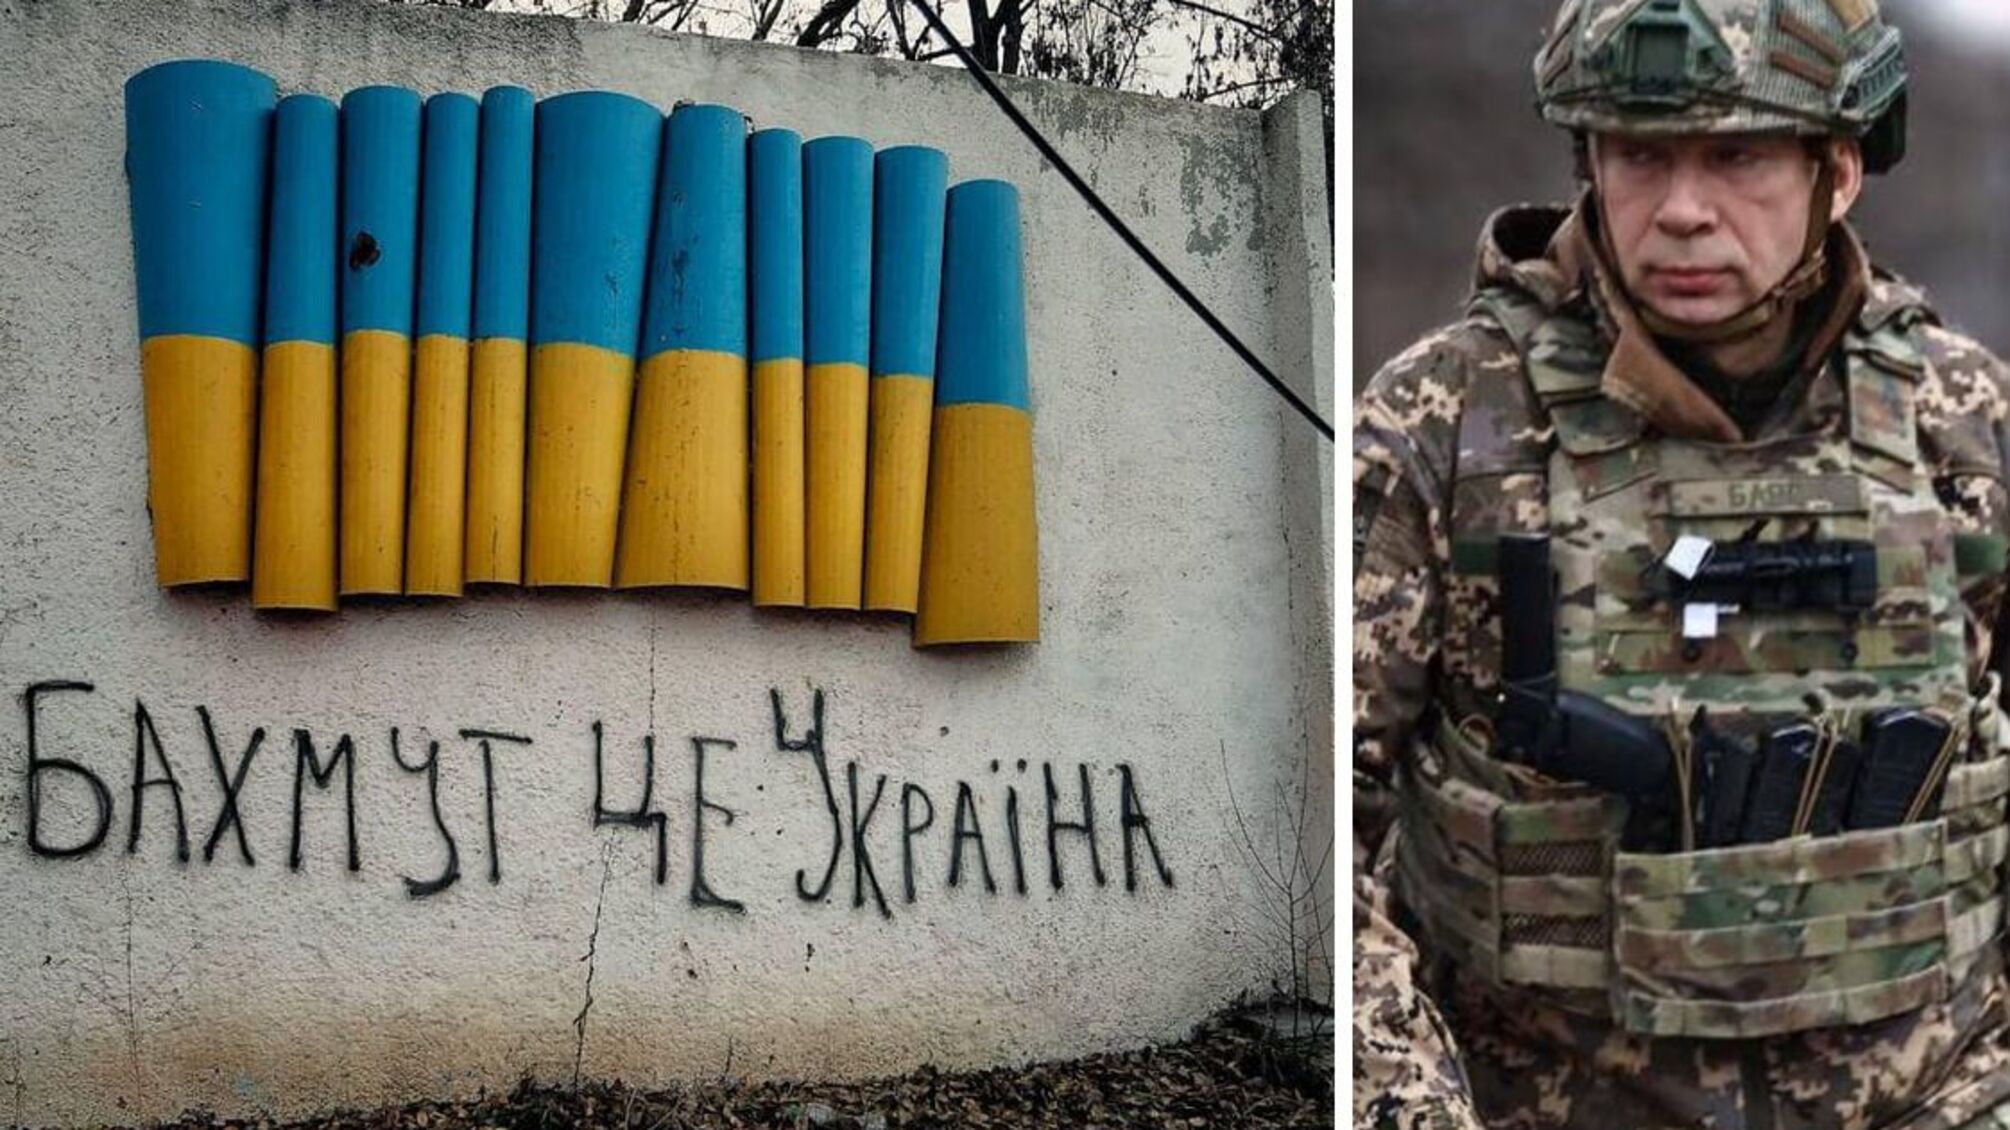 Сырский - о ситуации под Бахмутом в Донецкой области